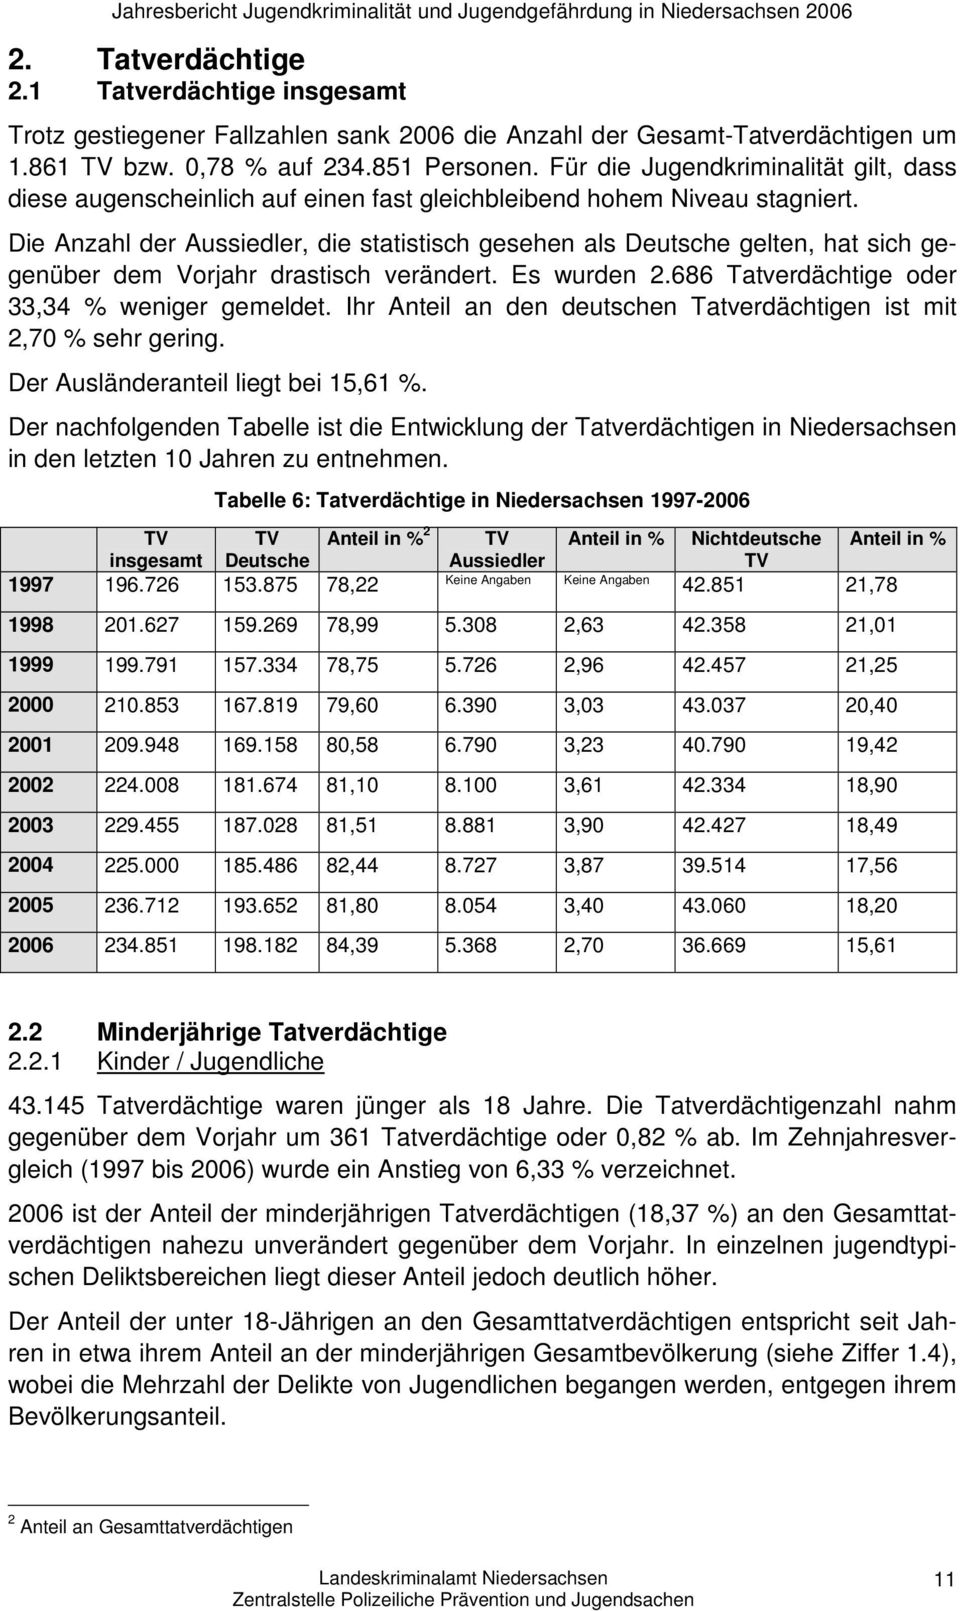 Die Anzahl der Aussiedler, die statistisch gesehen als Deutsche gelten, hat sich gegenüber dem Vorjahr drastisch verändert. Es wurden 2.686 Tatverdächtige oder 33,34 % weniger gemeldet.